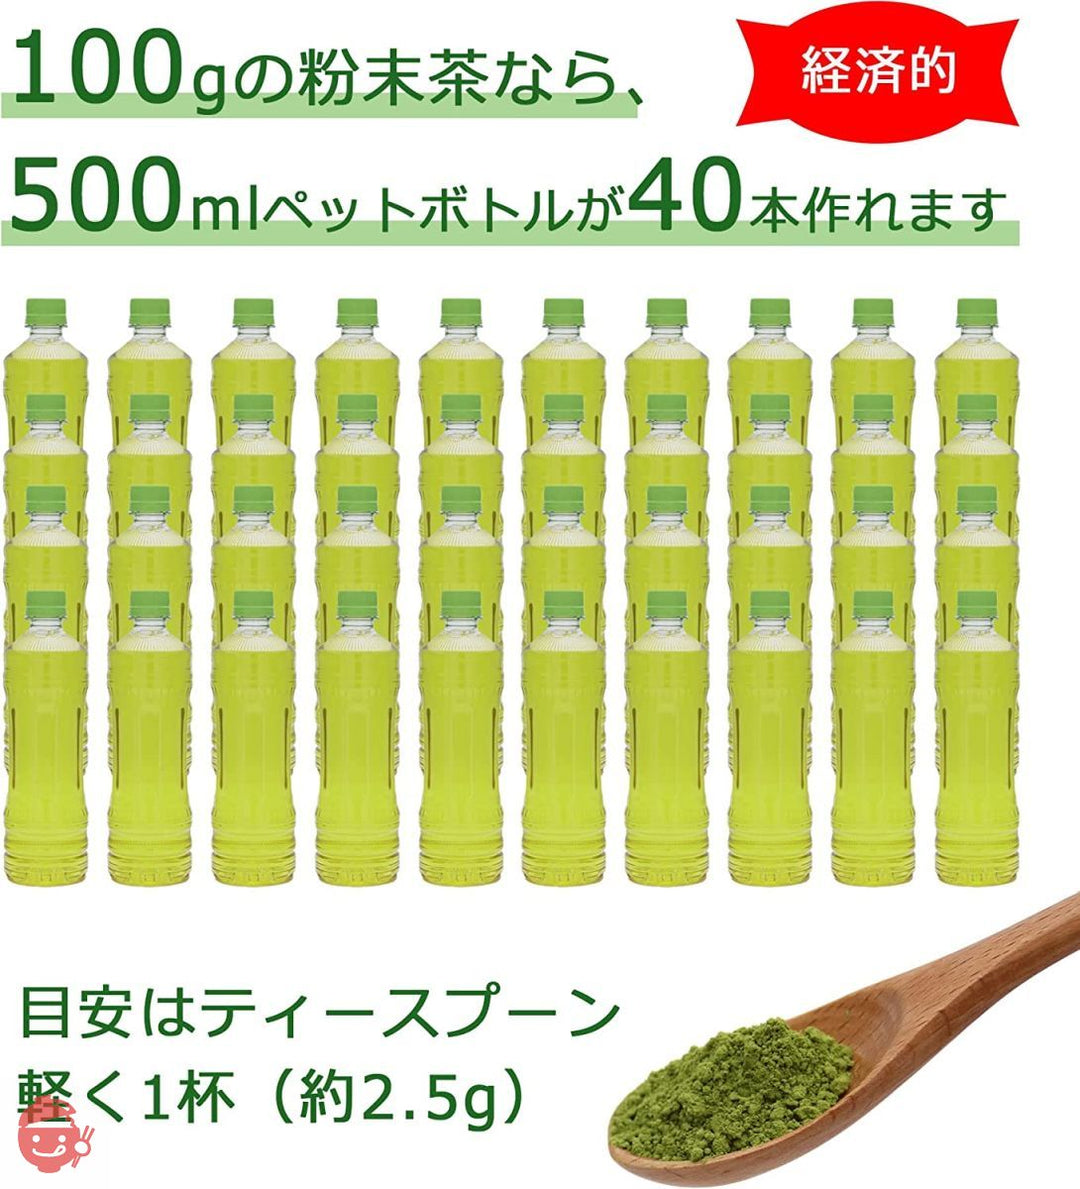 静岡県産 一番茶使用 カテキンまるごと粉末緑茶 無農薬・無化学肥料栽培 栄養まるごと食べるお茶 湯飲み200杯分 100g入 (1袋)の画像